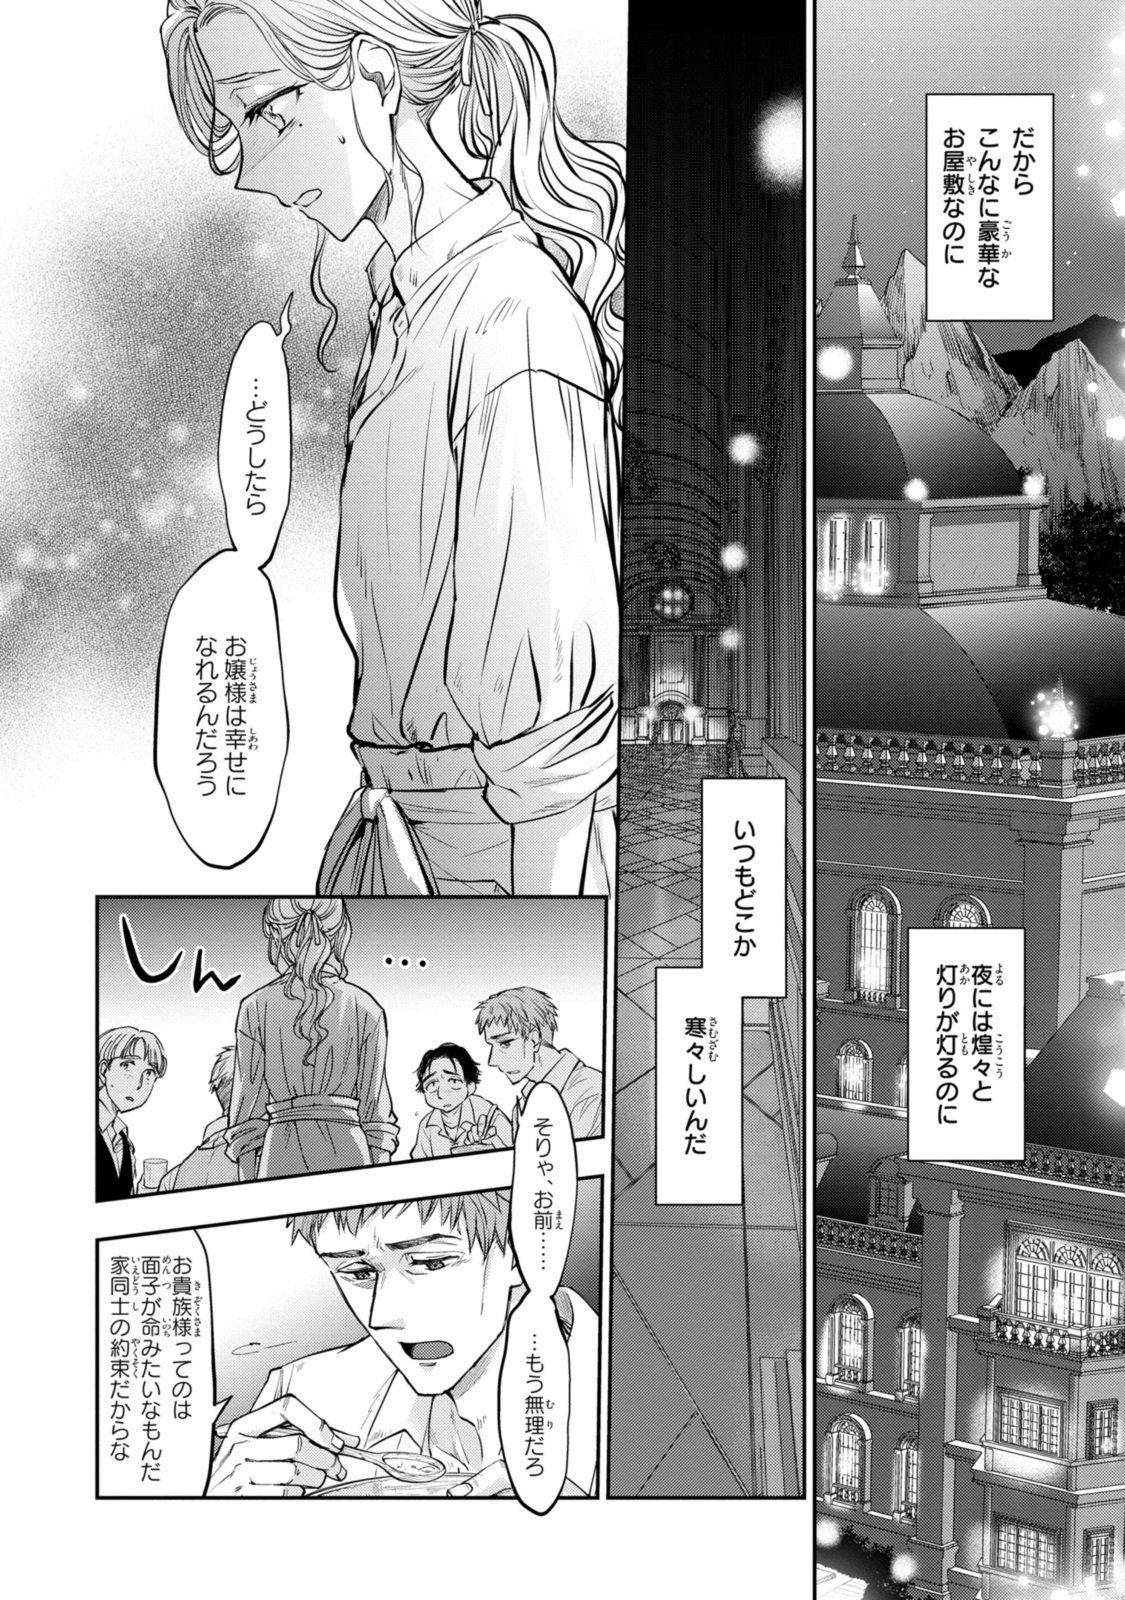 Sakkon no Cinderella wa Kutsu wo Otosanai. - Chapter 16.2 - Page 3